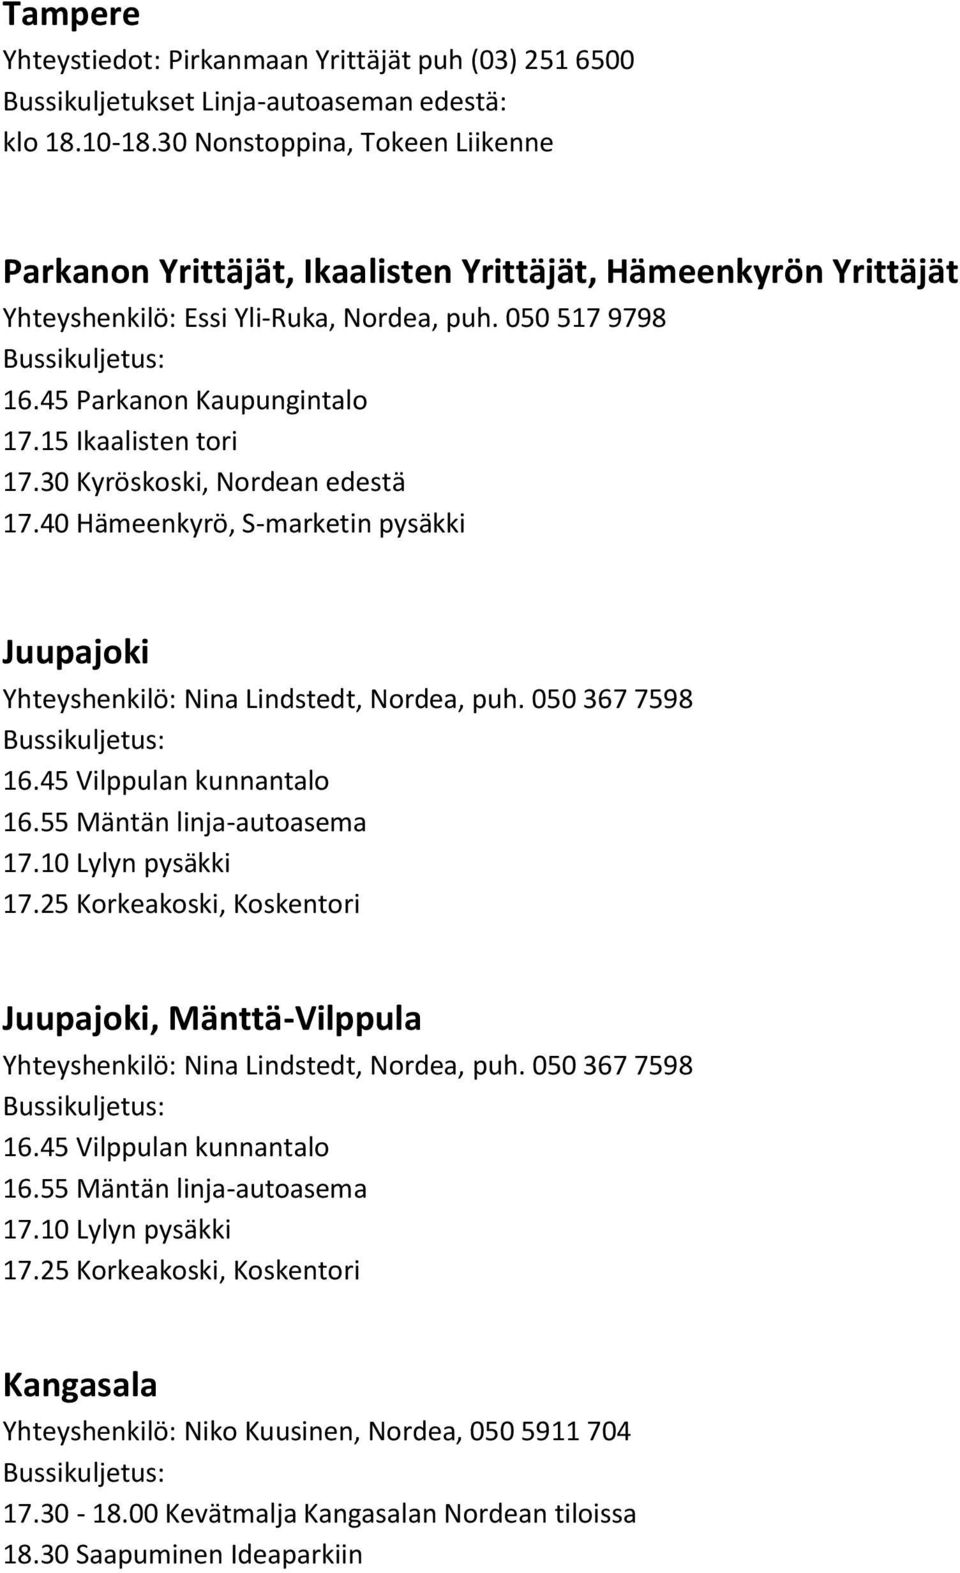 15 Ikaalisten tori 17.30 Kyröskoski, Nordean edestä 17.40 Hämeenkyrö, S-marketin pysäkki Juupajoki 16.45 Vilppulan kunnantalo 16.55 Mäntän linja-autoasema 17.10 Lylyn pysäkki 17.